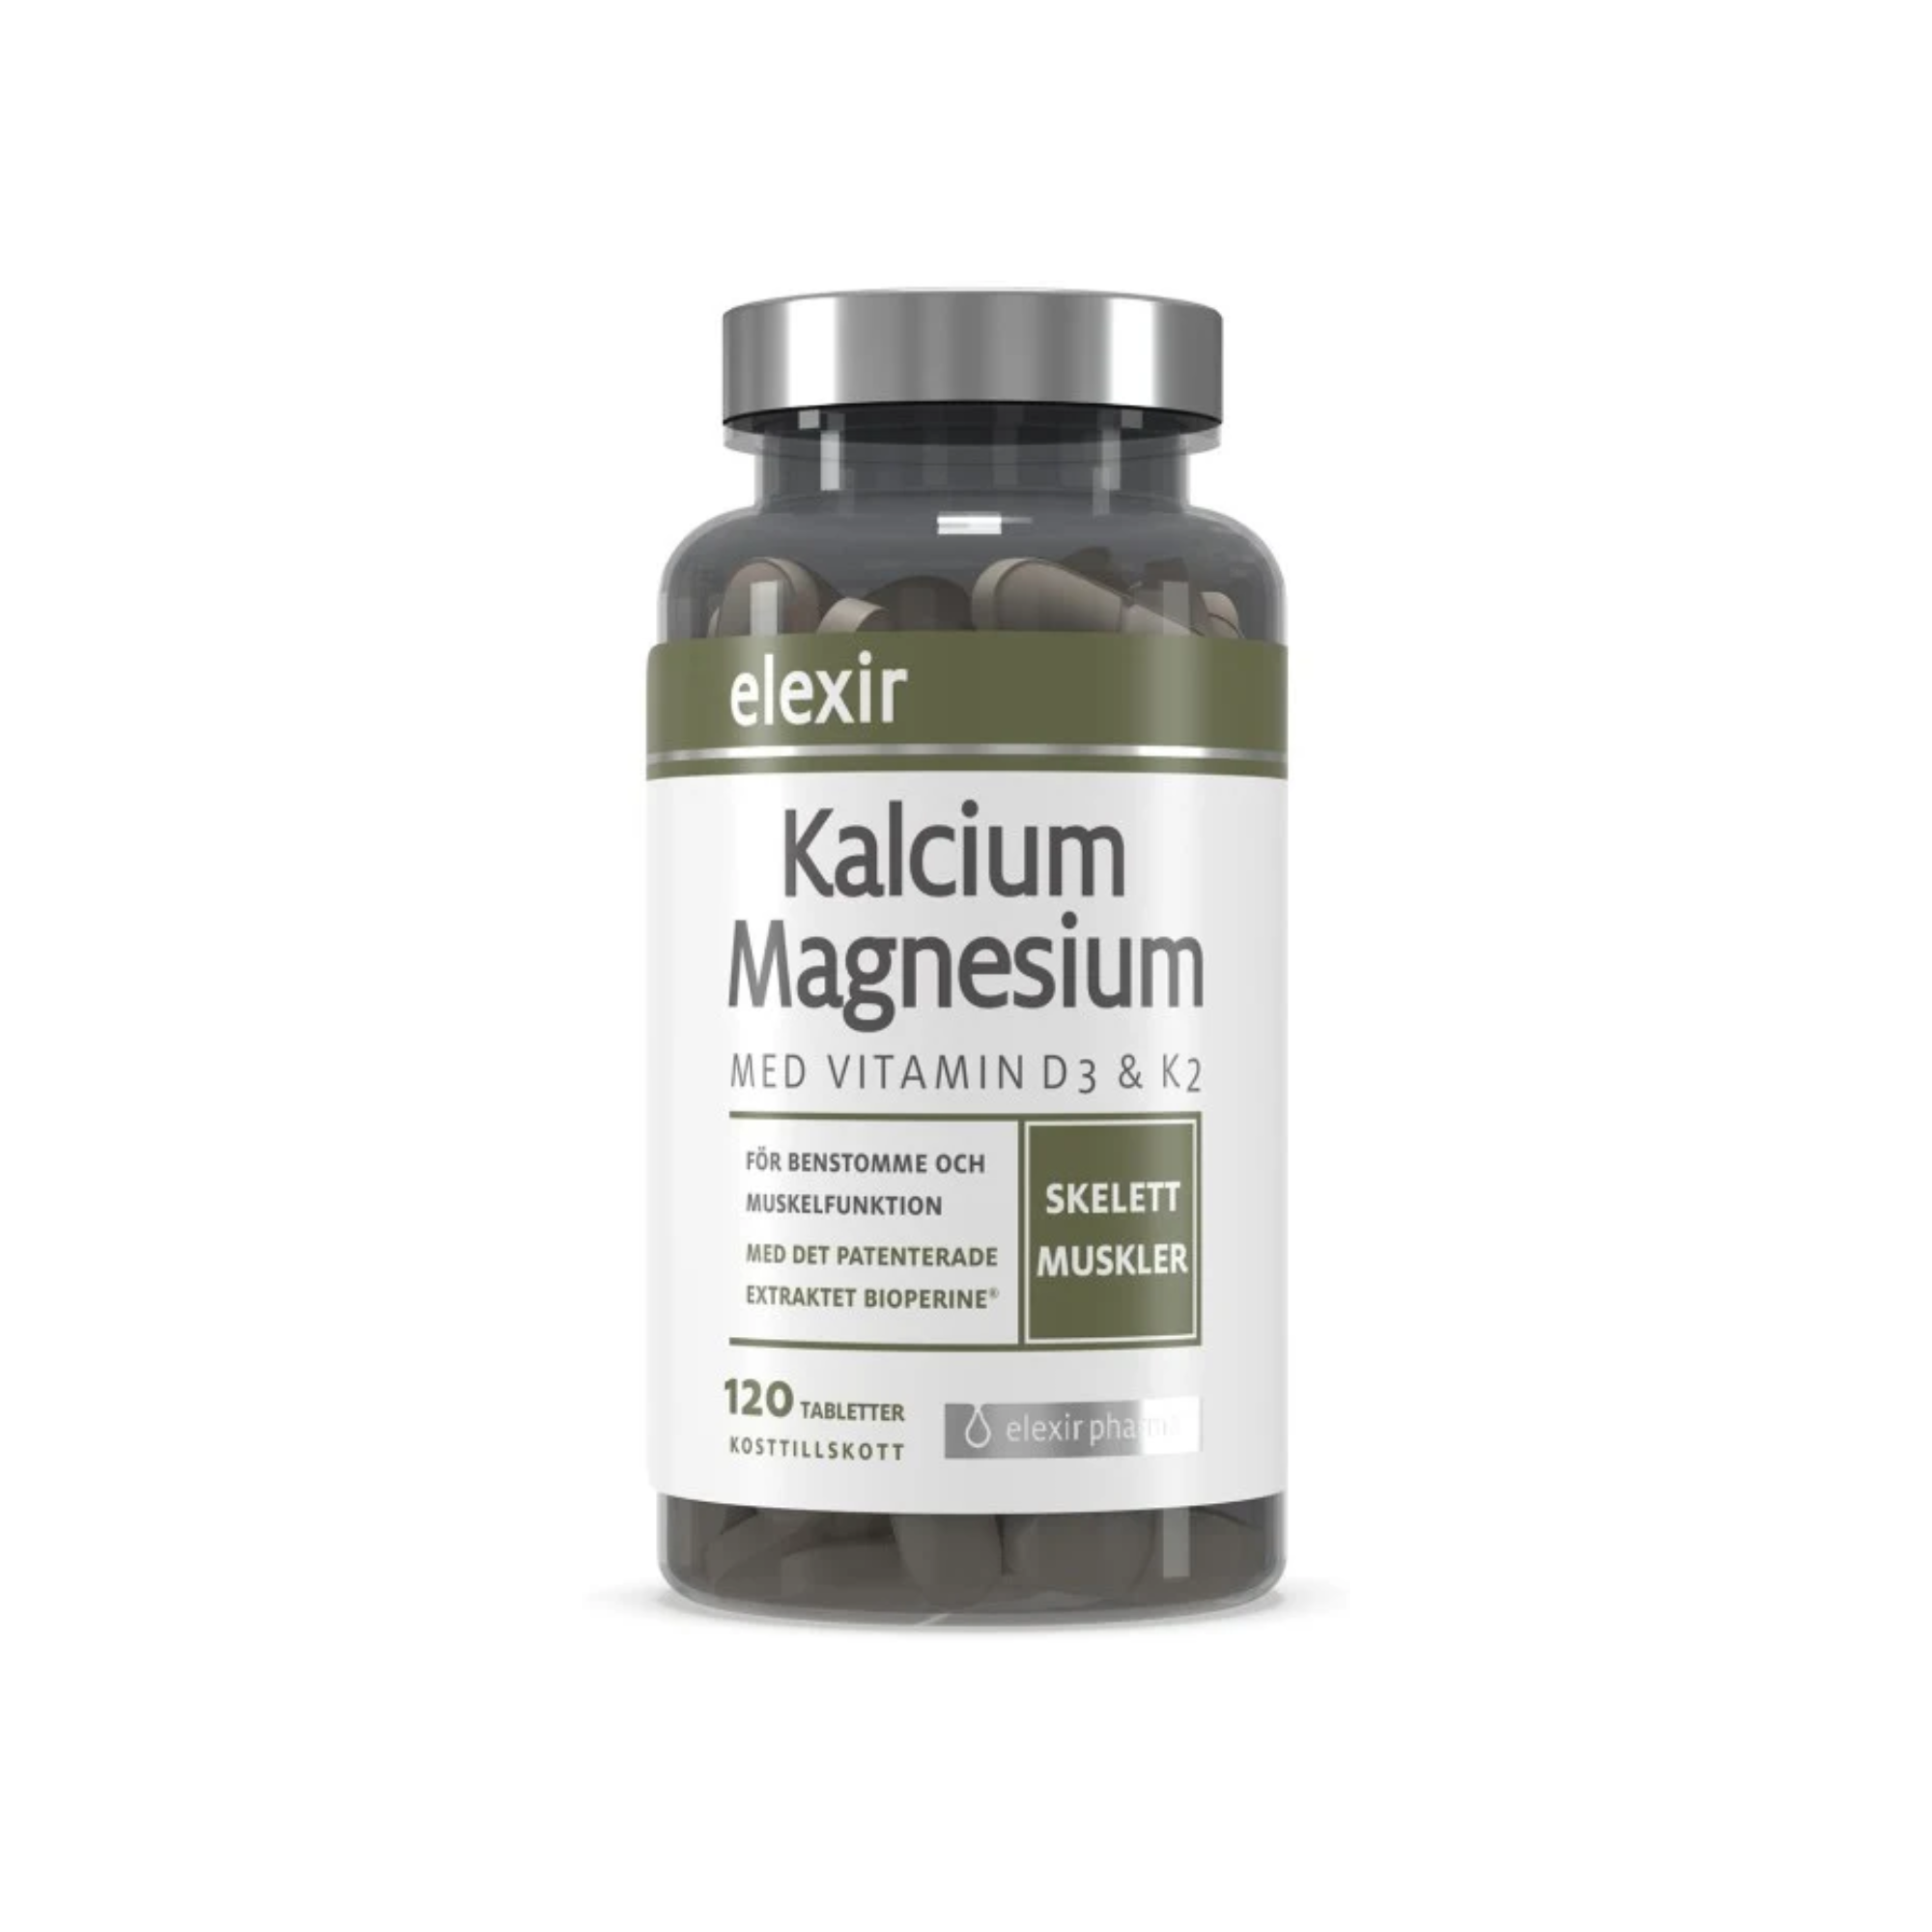 Elexir Kalcium Magnesium, 120 tabletter